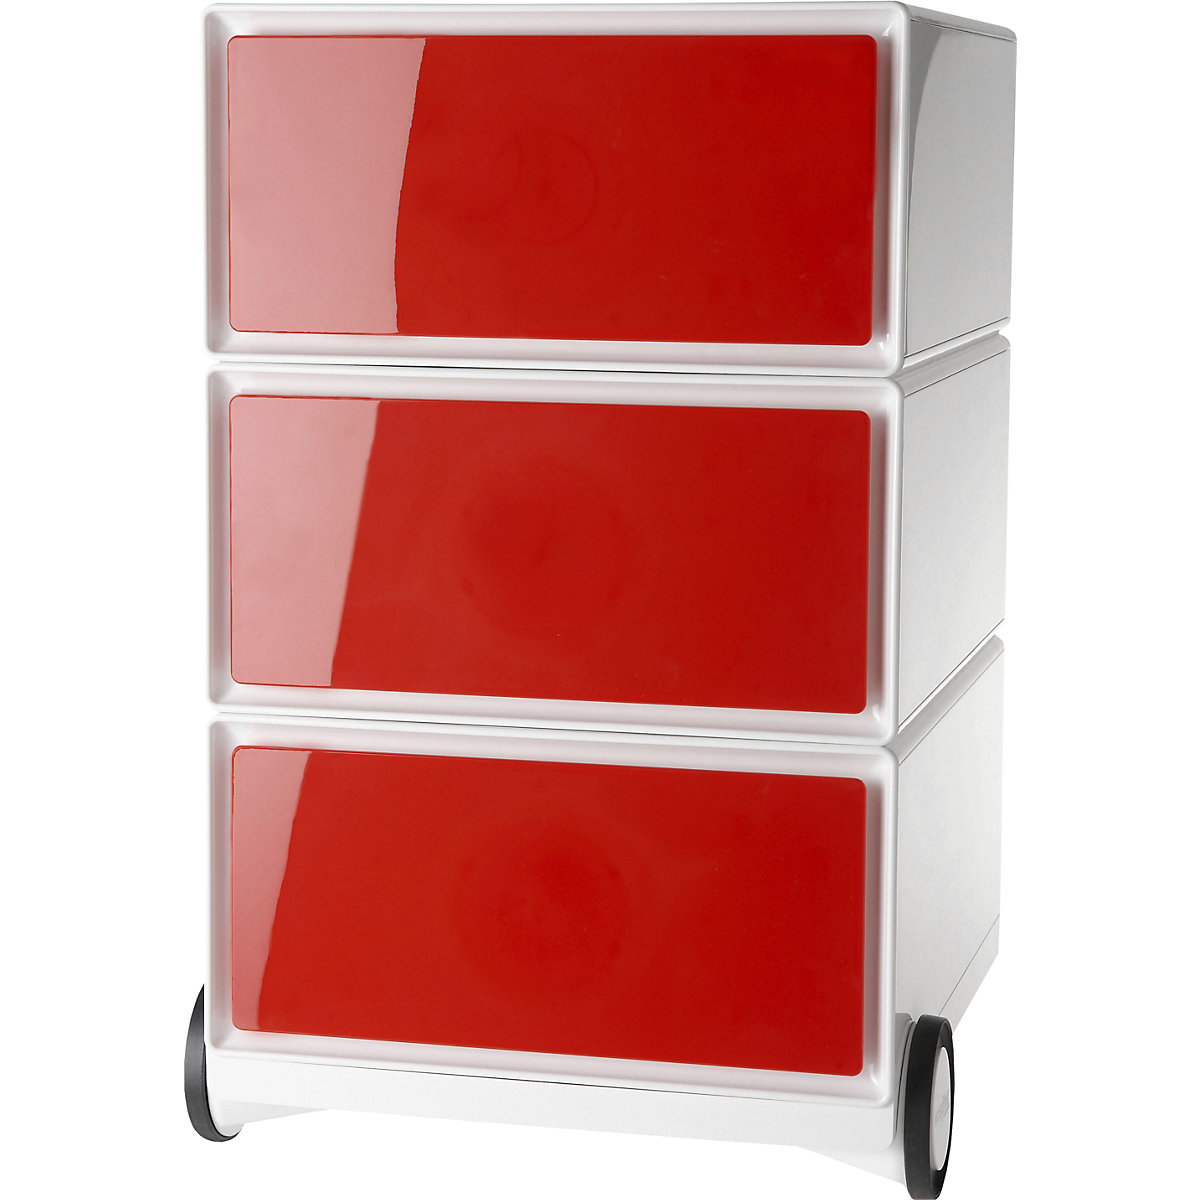 Pokretni ladičar easyBox® – Paperflow, 3 ladice, u bijeloj / crvenoj boji